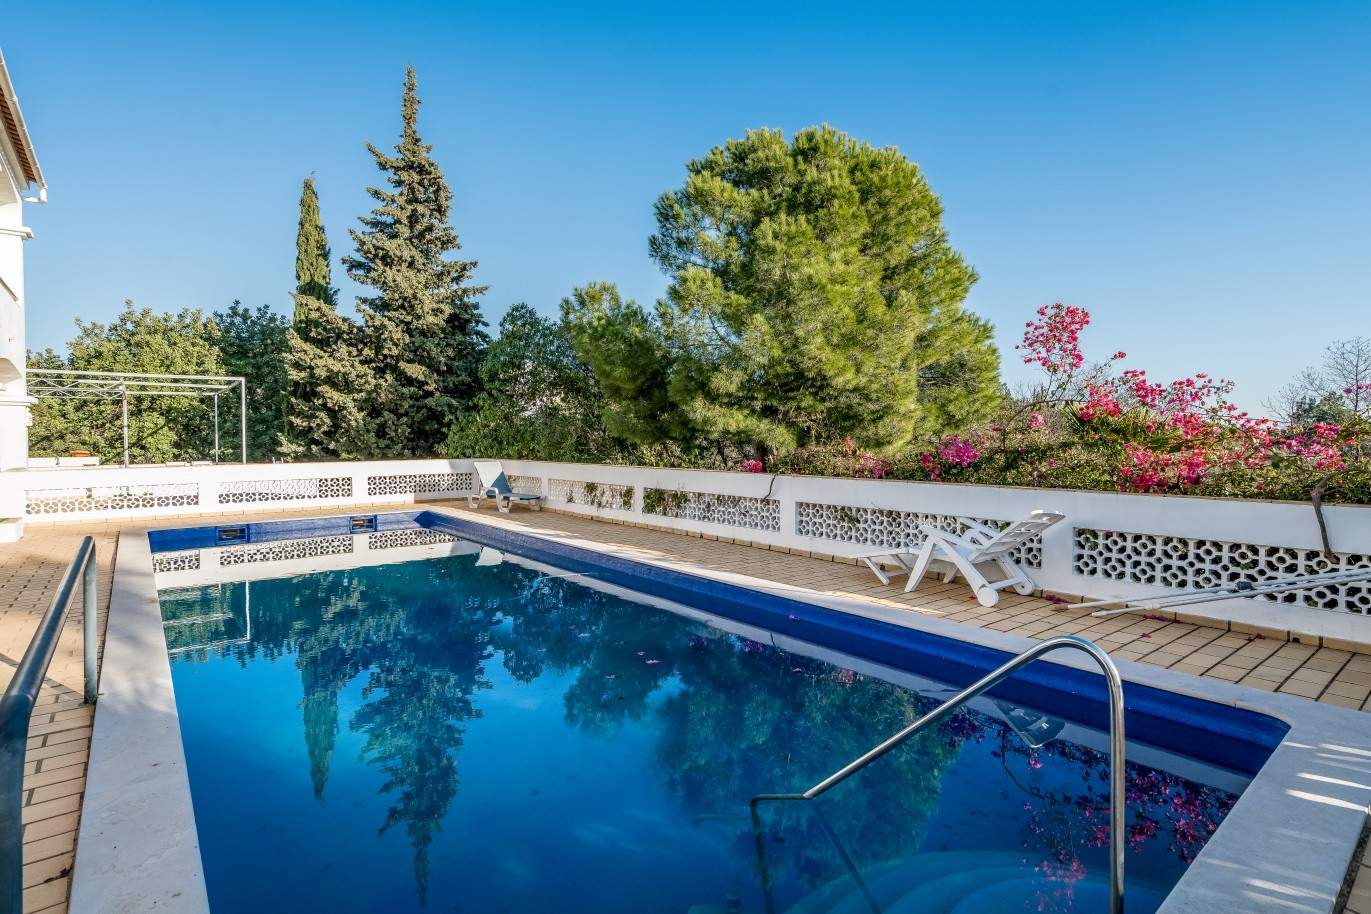 Propriedade à venda, piscina, vista mar, Santa Bárbara Nexe, Algarve_72157